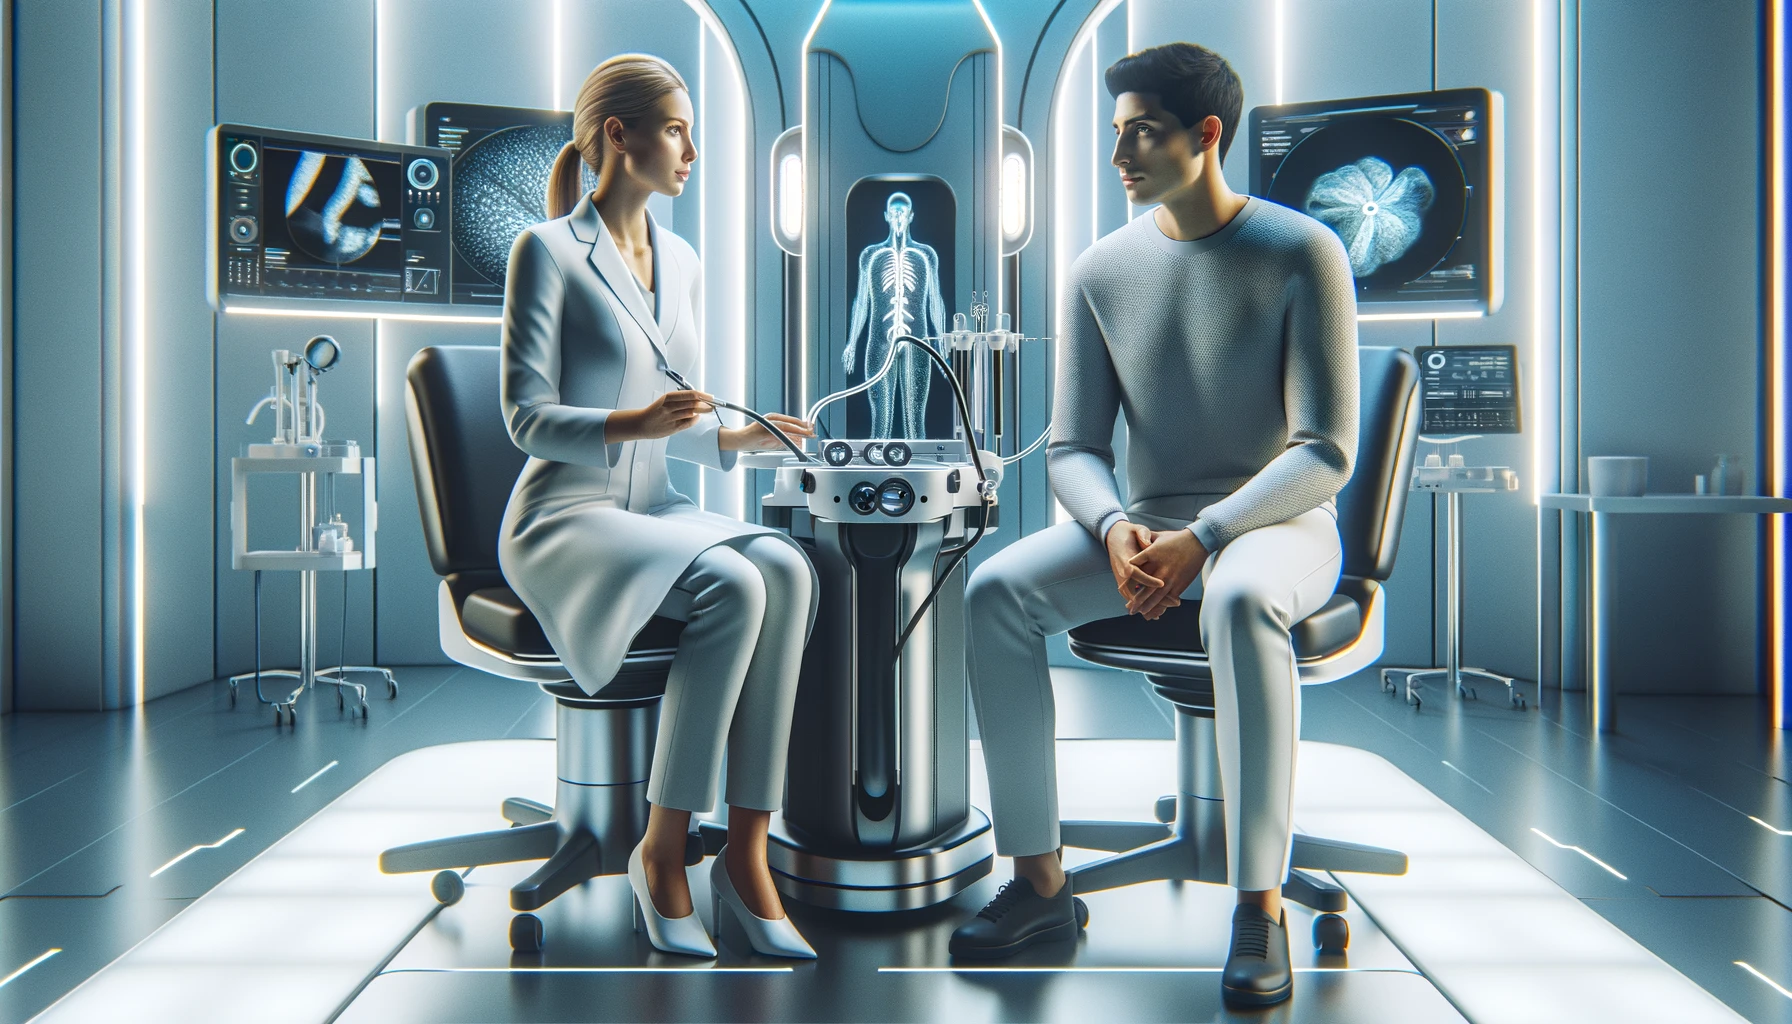 Kobieta w białym garniturze siedzi naprzeciwko mężczyzny w futurystycznym biurze lekarskim, z holograficznym wyświetlaczem ciała człowieka i zaawansowanym sprzętem medycznym w tle. BioCam tworzy kapsułkę endoskopową